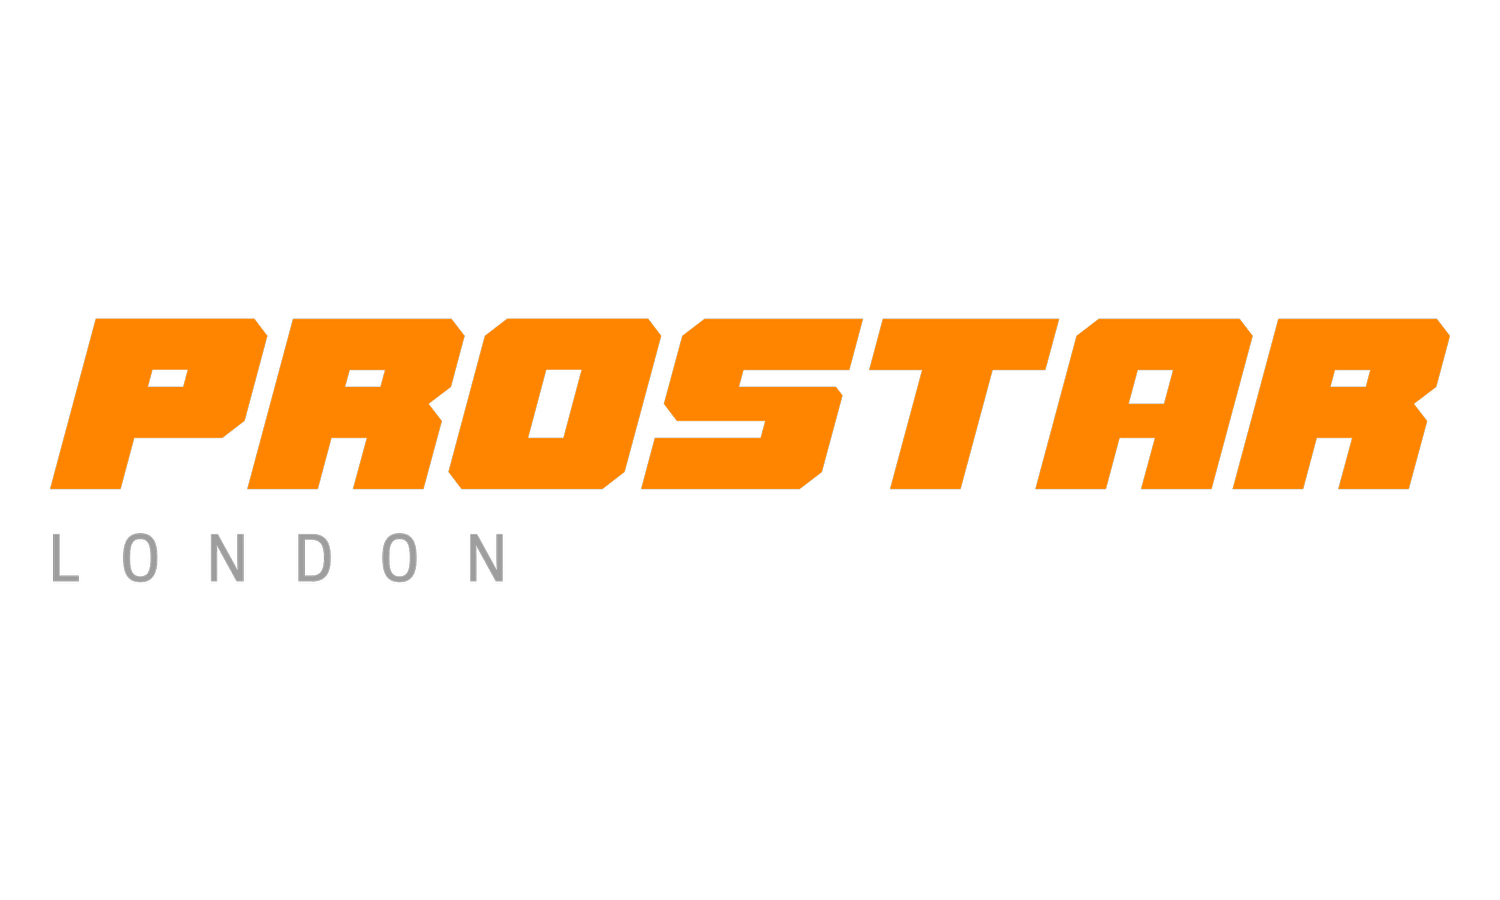 Prostar London - Lighting for TV Commercials, Film and Music